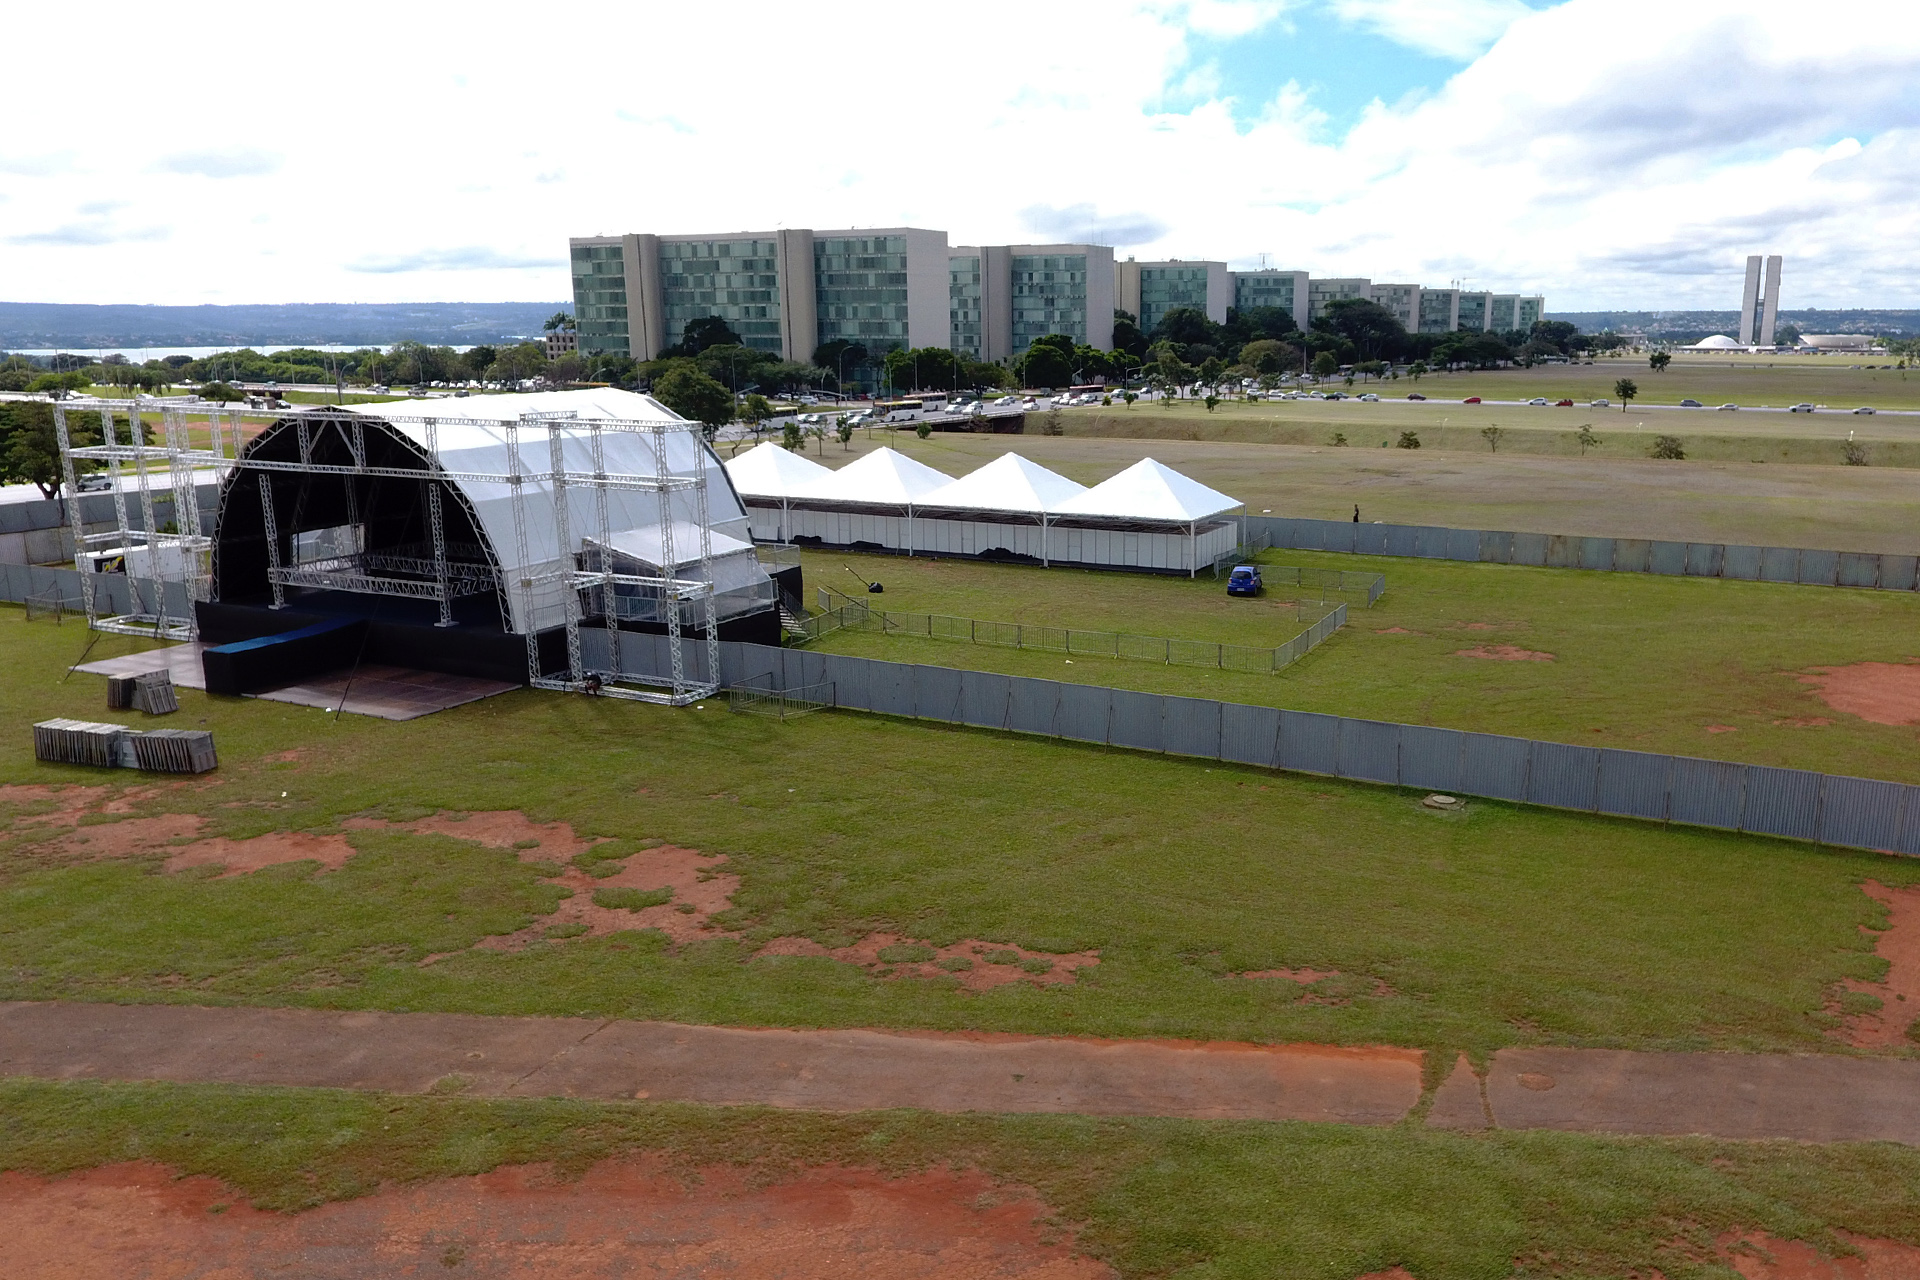 Parte da programação dos shows do 58º aniversário de Brasília foi preenchida por meio de chamamento público, como forma de estimular a produção cultural local